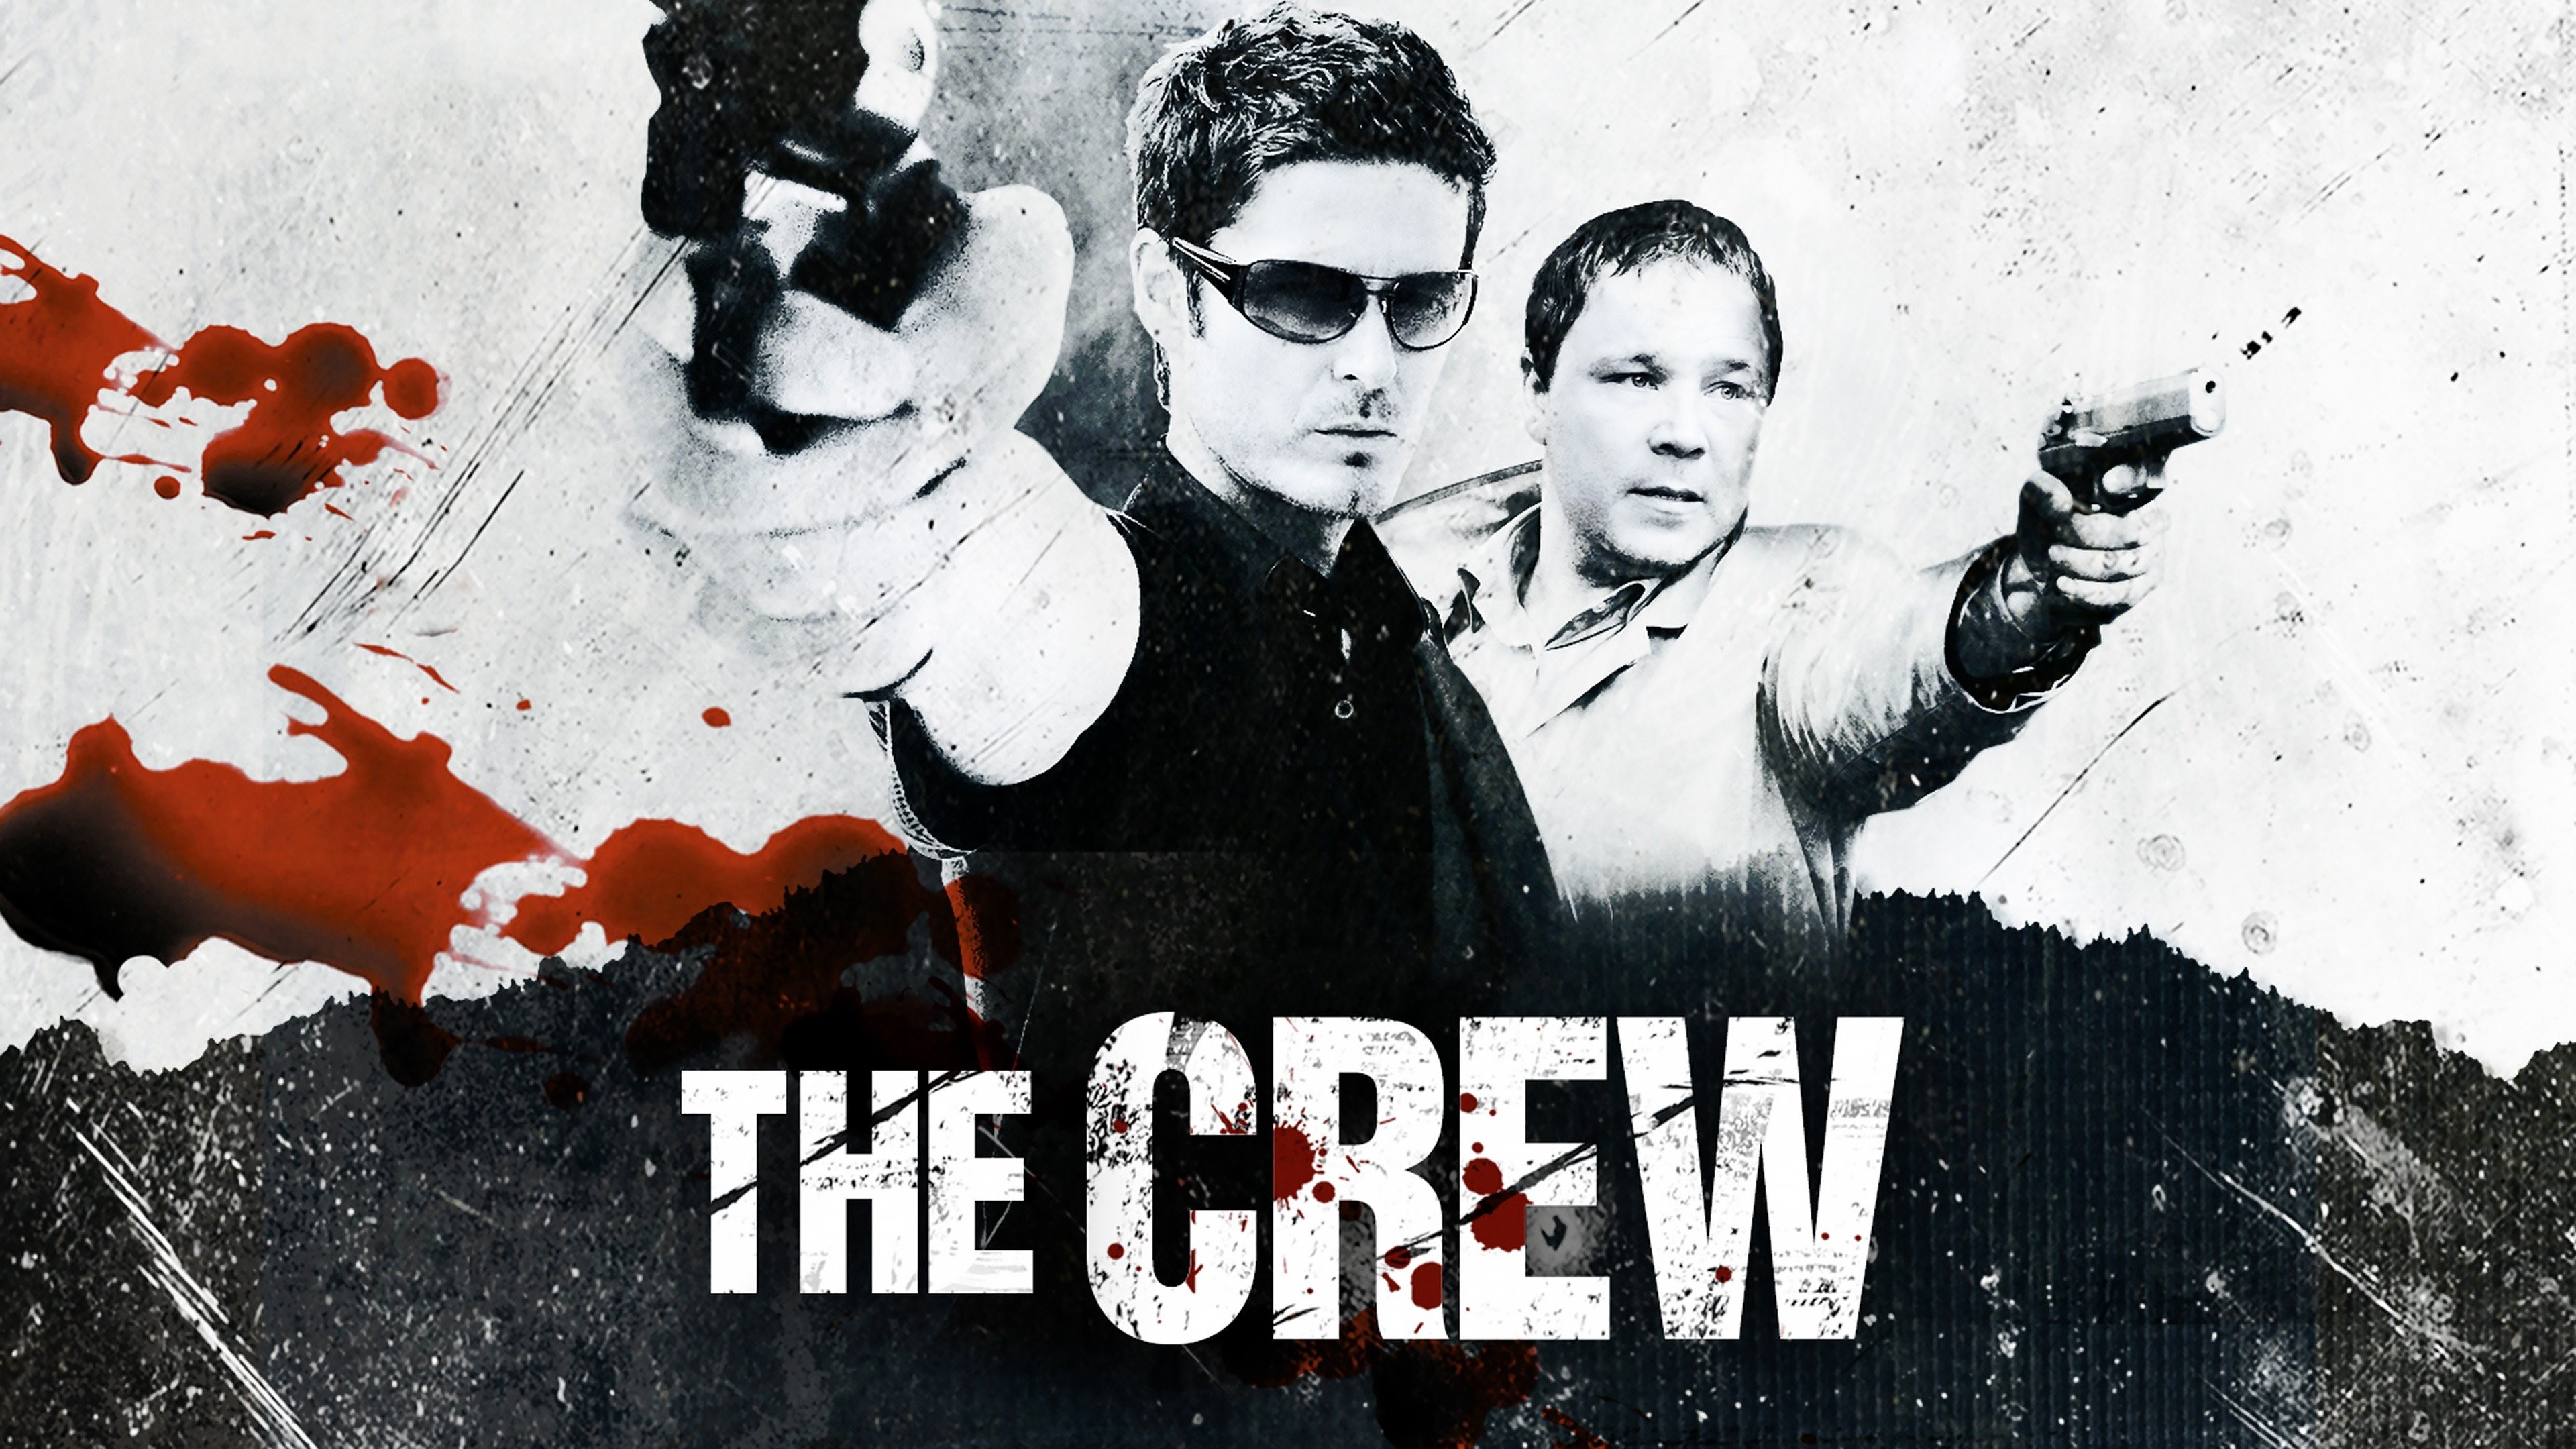 The Crew (2008) - IMDb